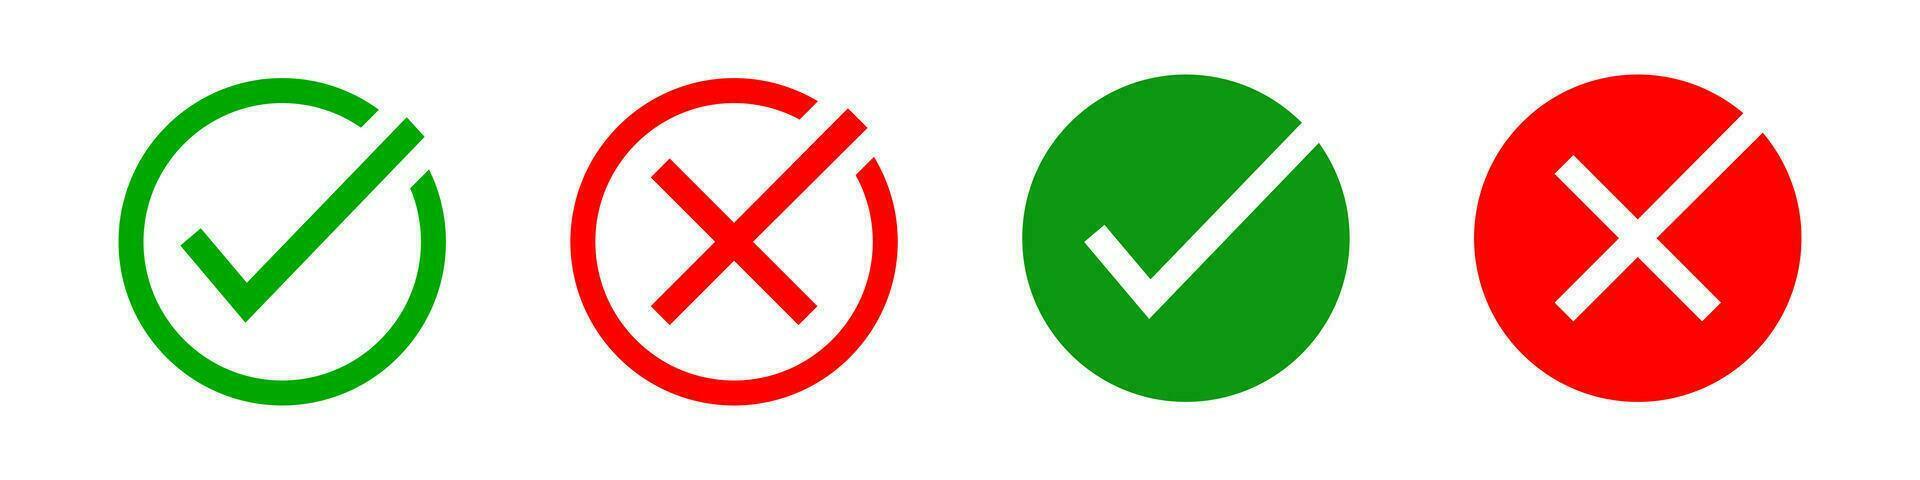 verde Verifica marca, vermelho Cruz marca ícone. positivo e negativo escolha símbolo. placa aplicativo botão vetor. vetor